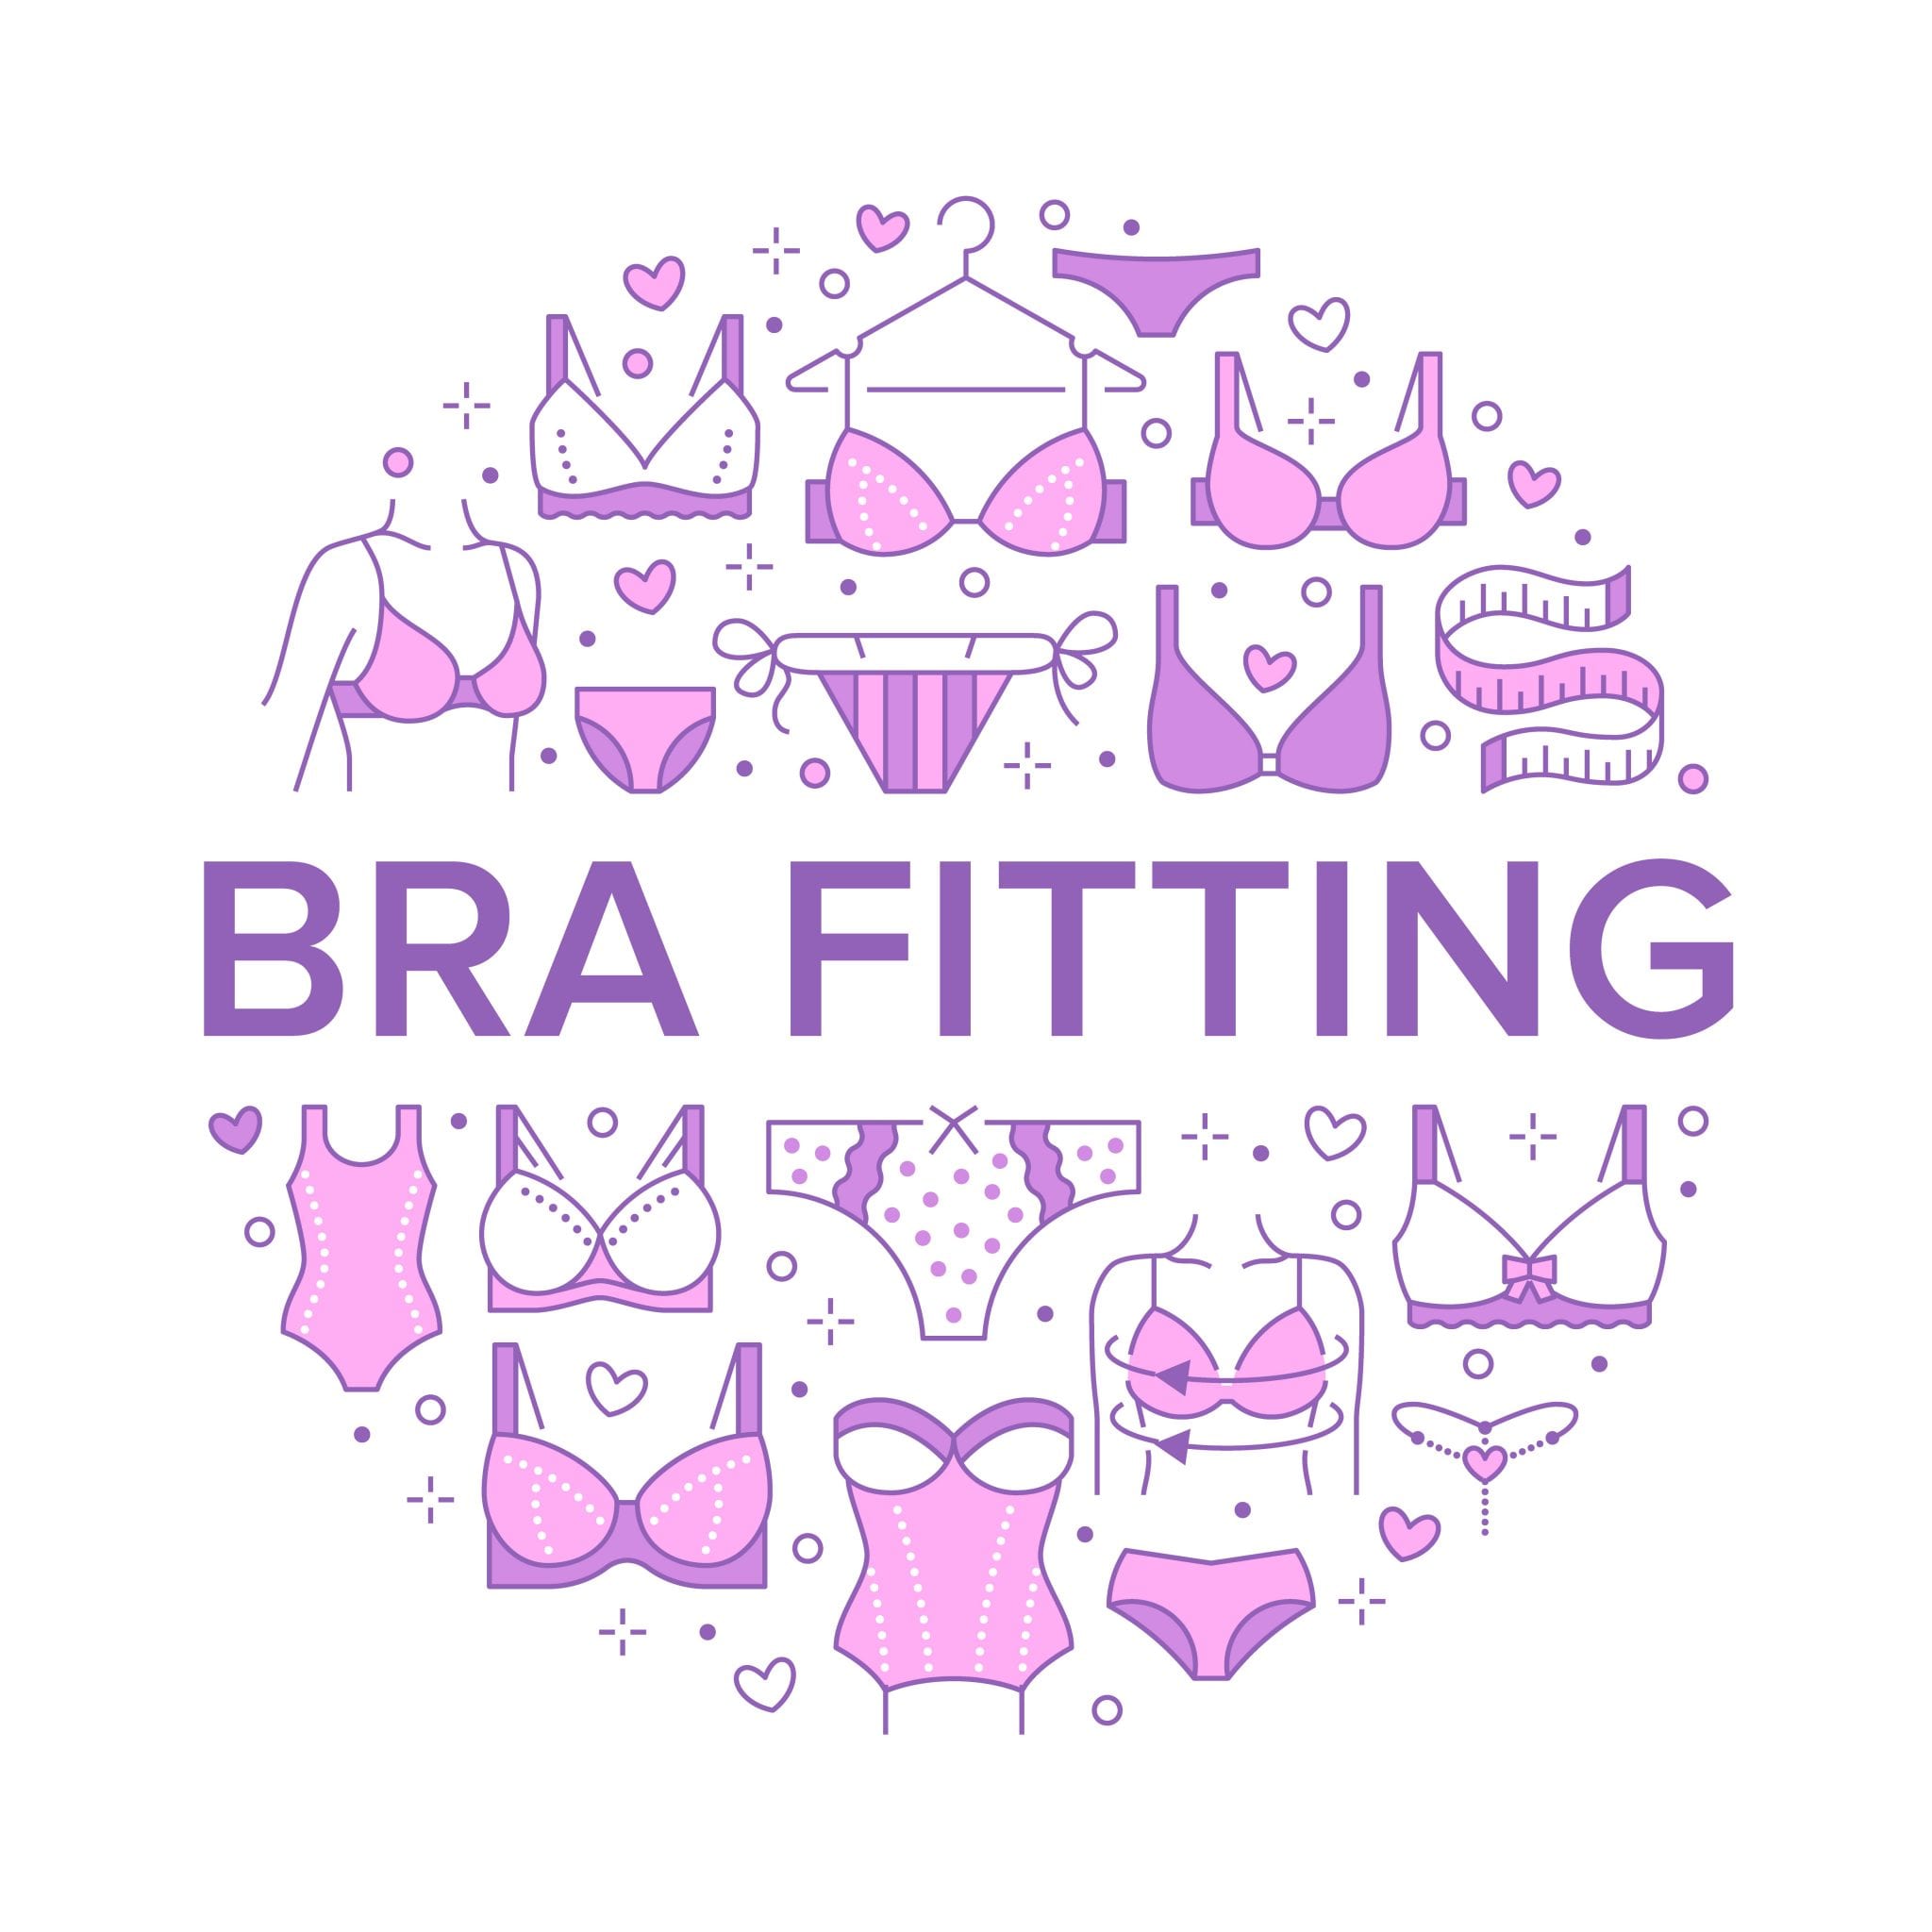 Bra fitting for bra fitting brochure